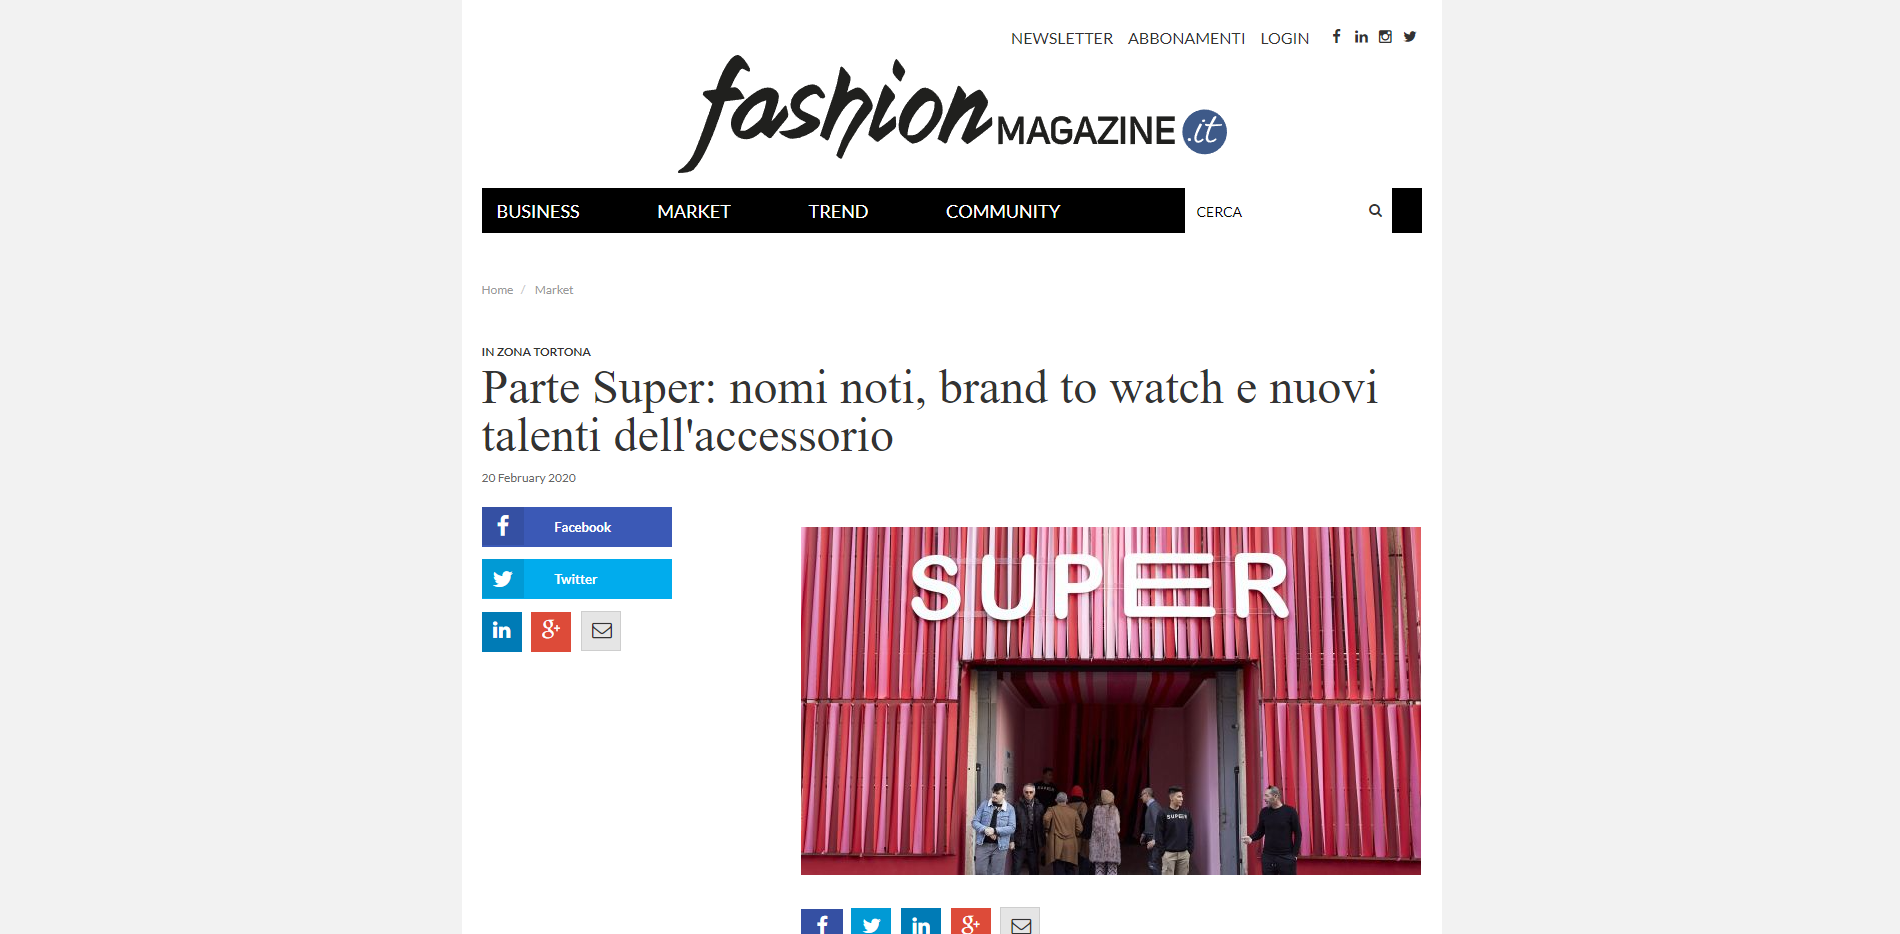 Fashion Magazine | Parte Super: nomi noti, brand to watch e nuovi talenti dell'accessorio